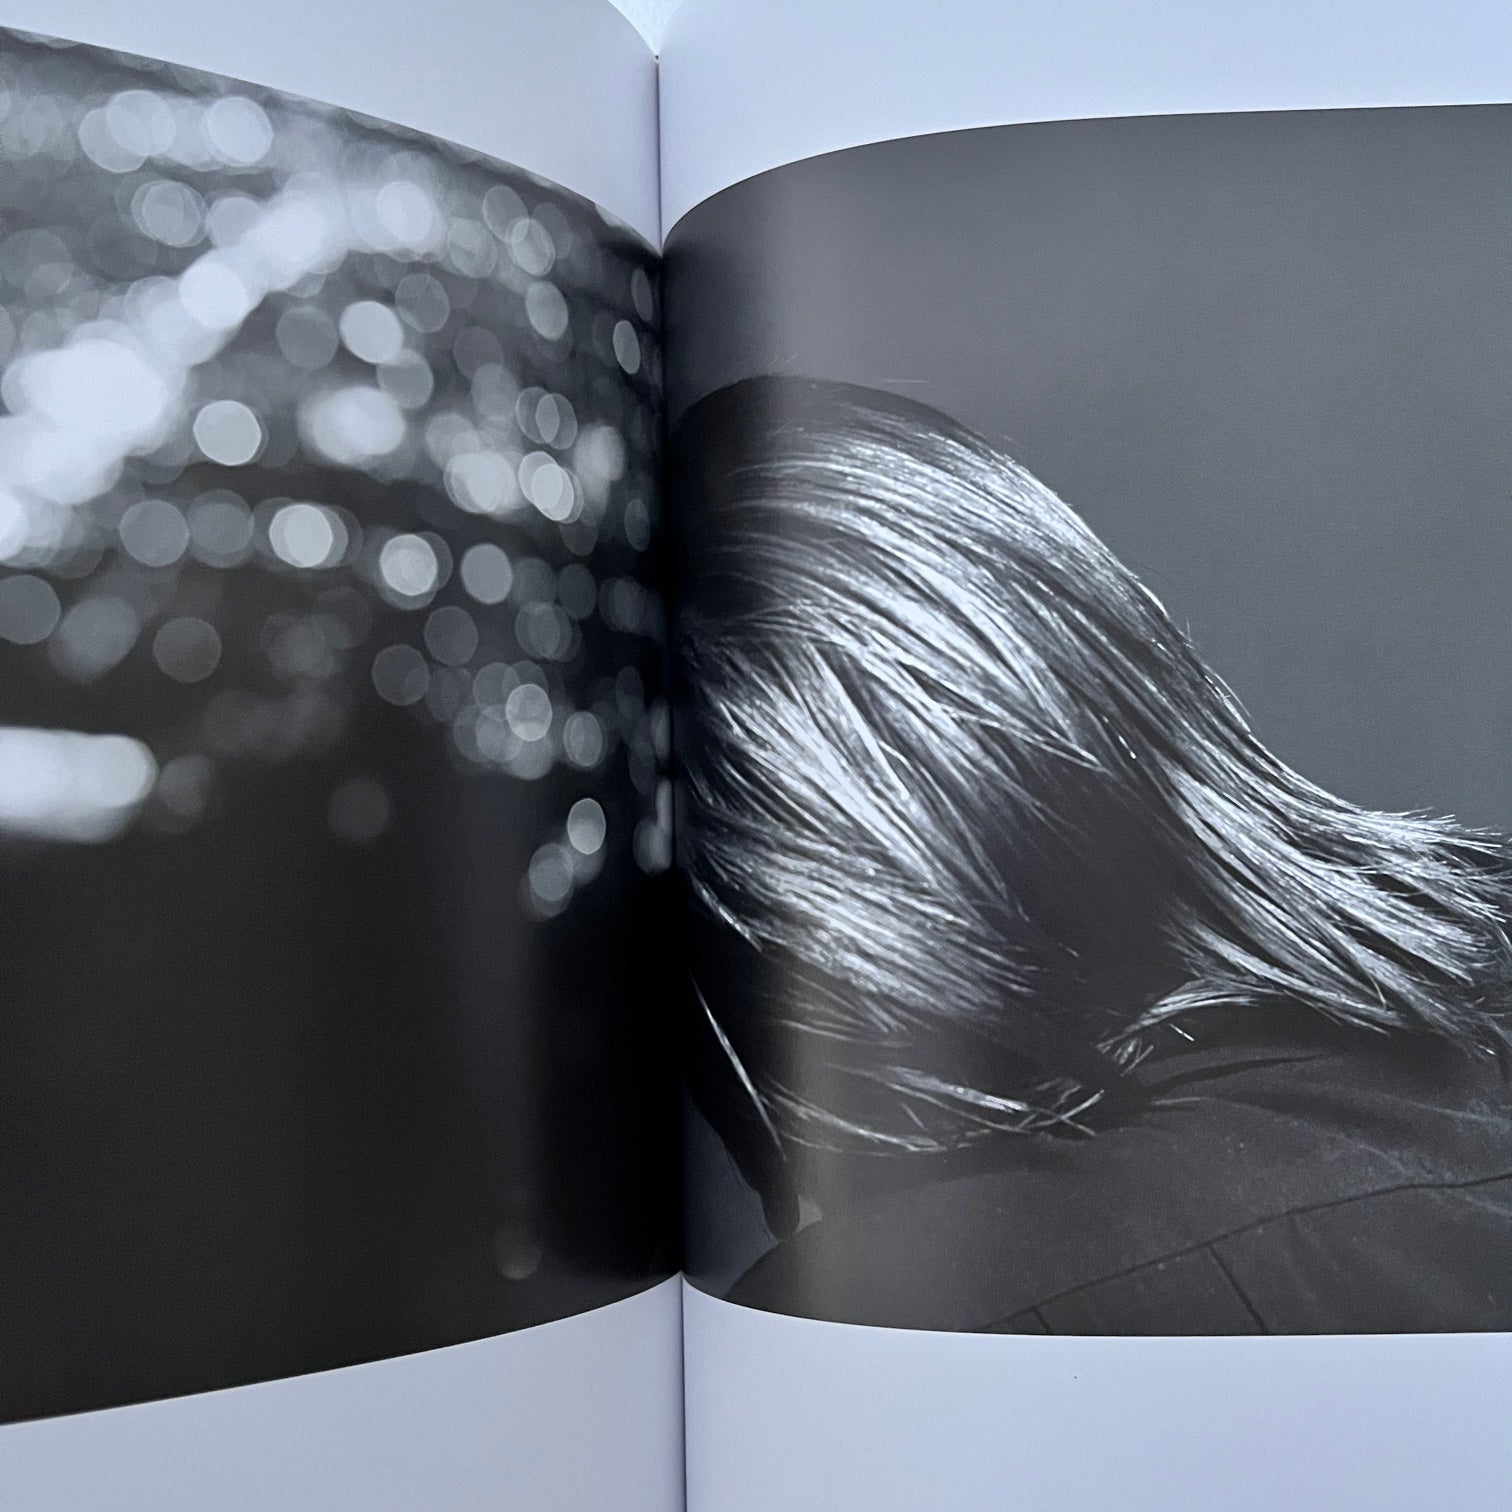 Hedi Slimane - Stern Fotografie. Portfolio Nr. 62 – Blicero Books